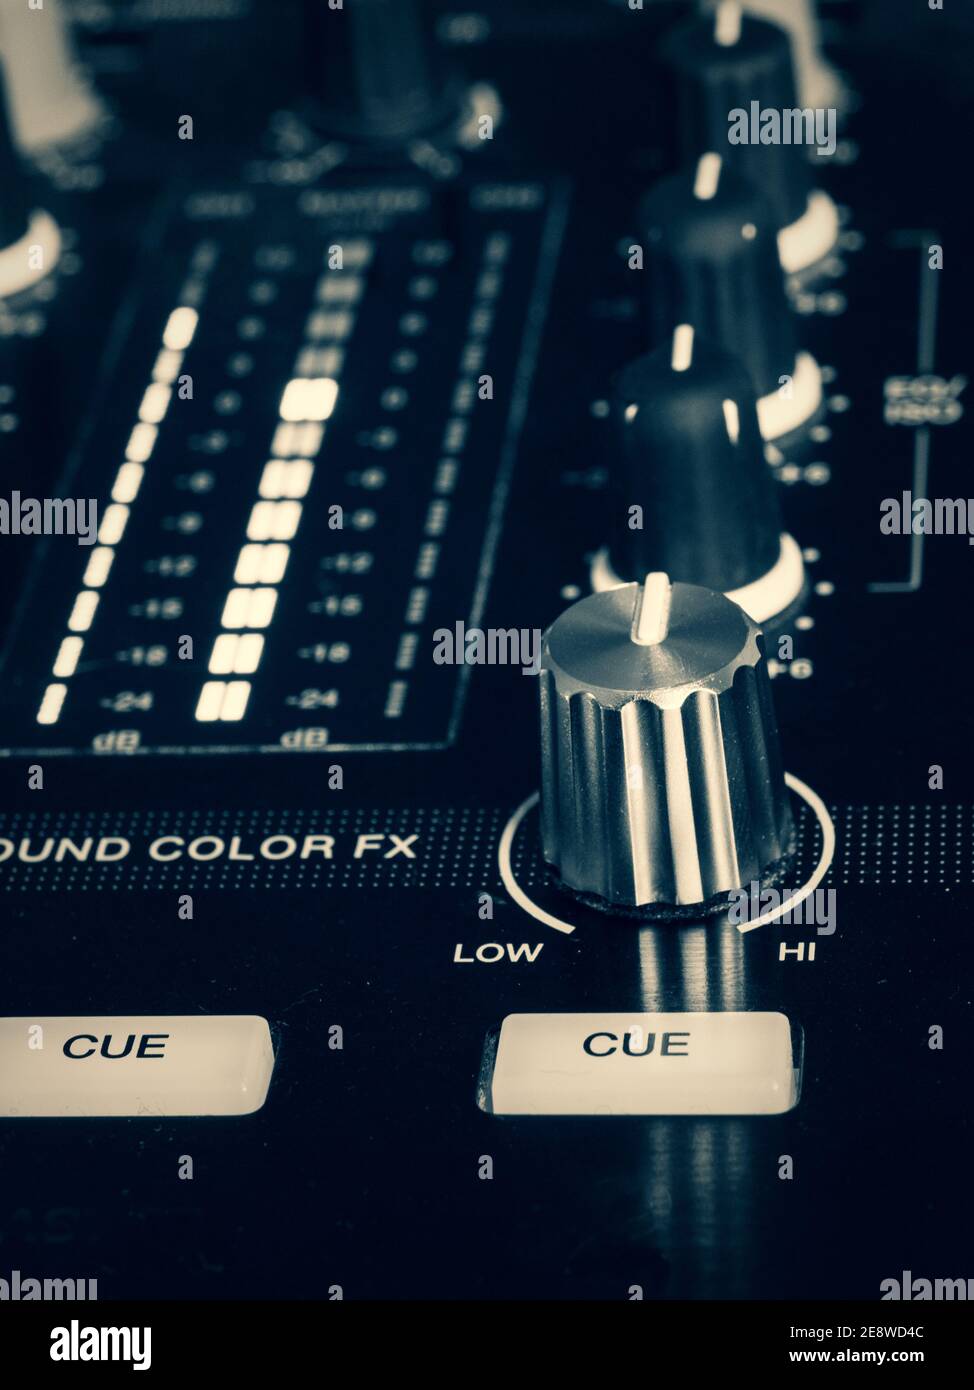 Immagine di sudio delle manopole, dei pulsanti e dei cursori di una scrivania di mixaggio DJ. Foto Stock